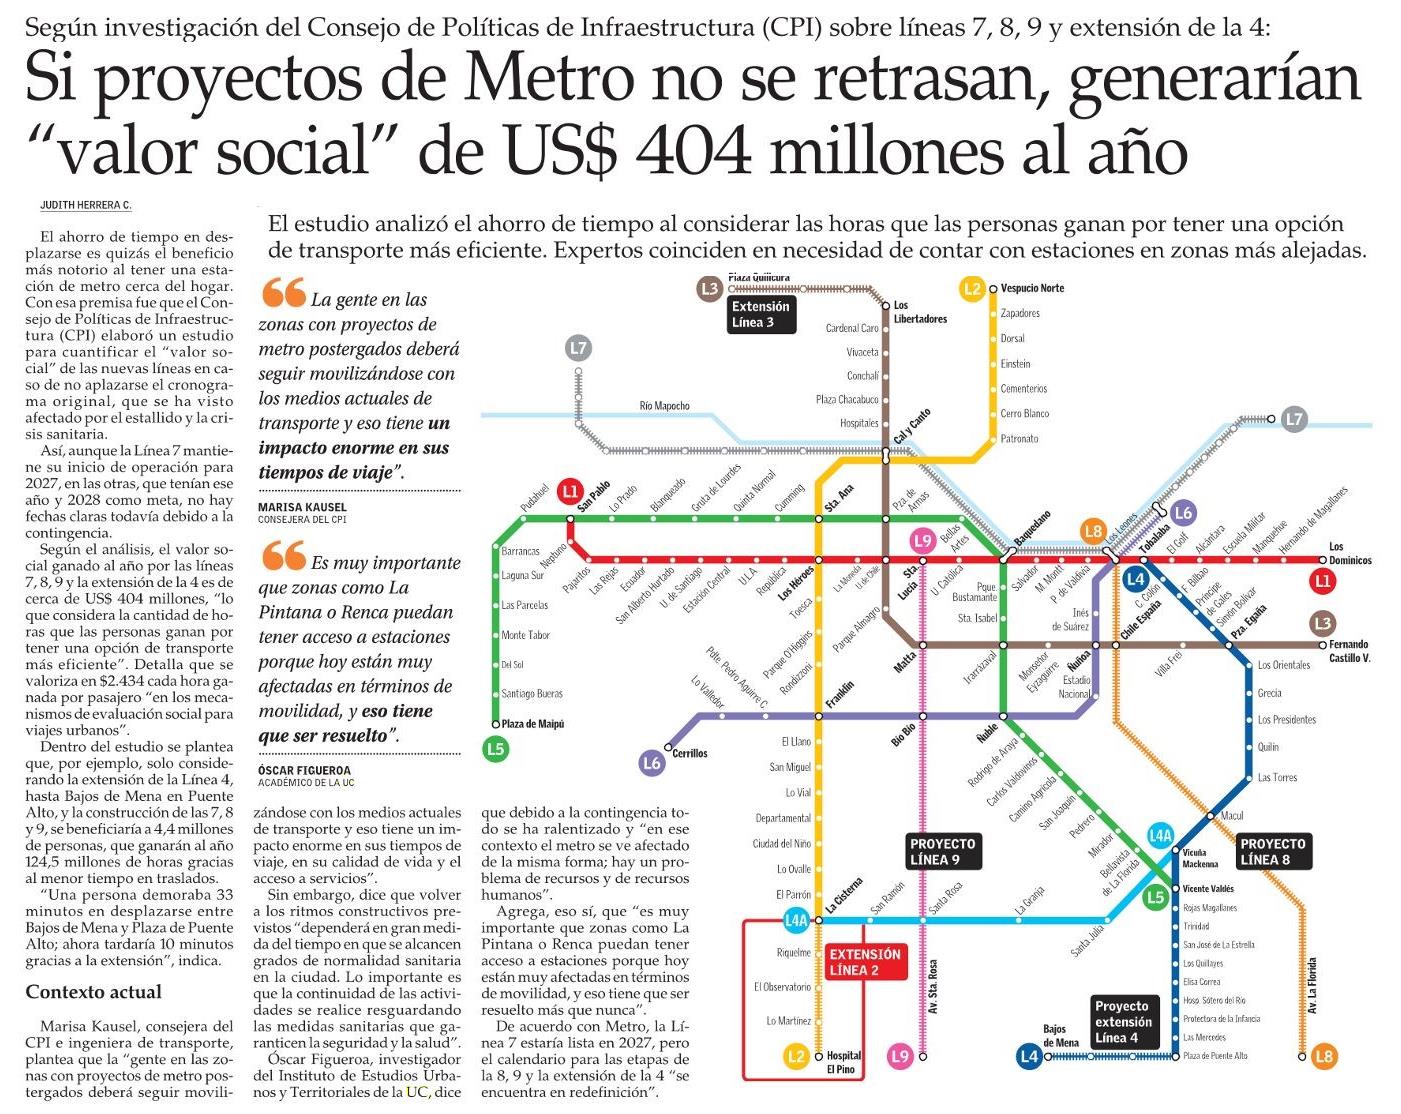 El Mercurio: Si proyectos de Metro no se retrasan, generarían “valor social” de US$ 404 millones al año